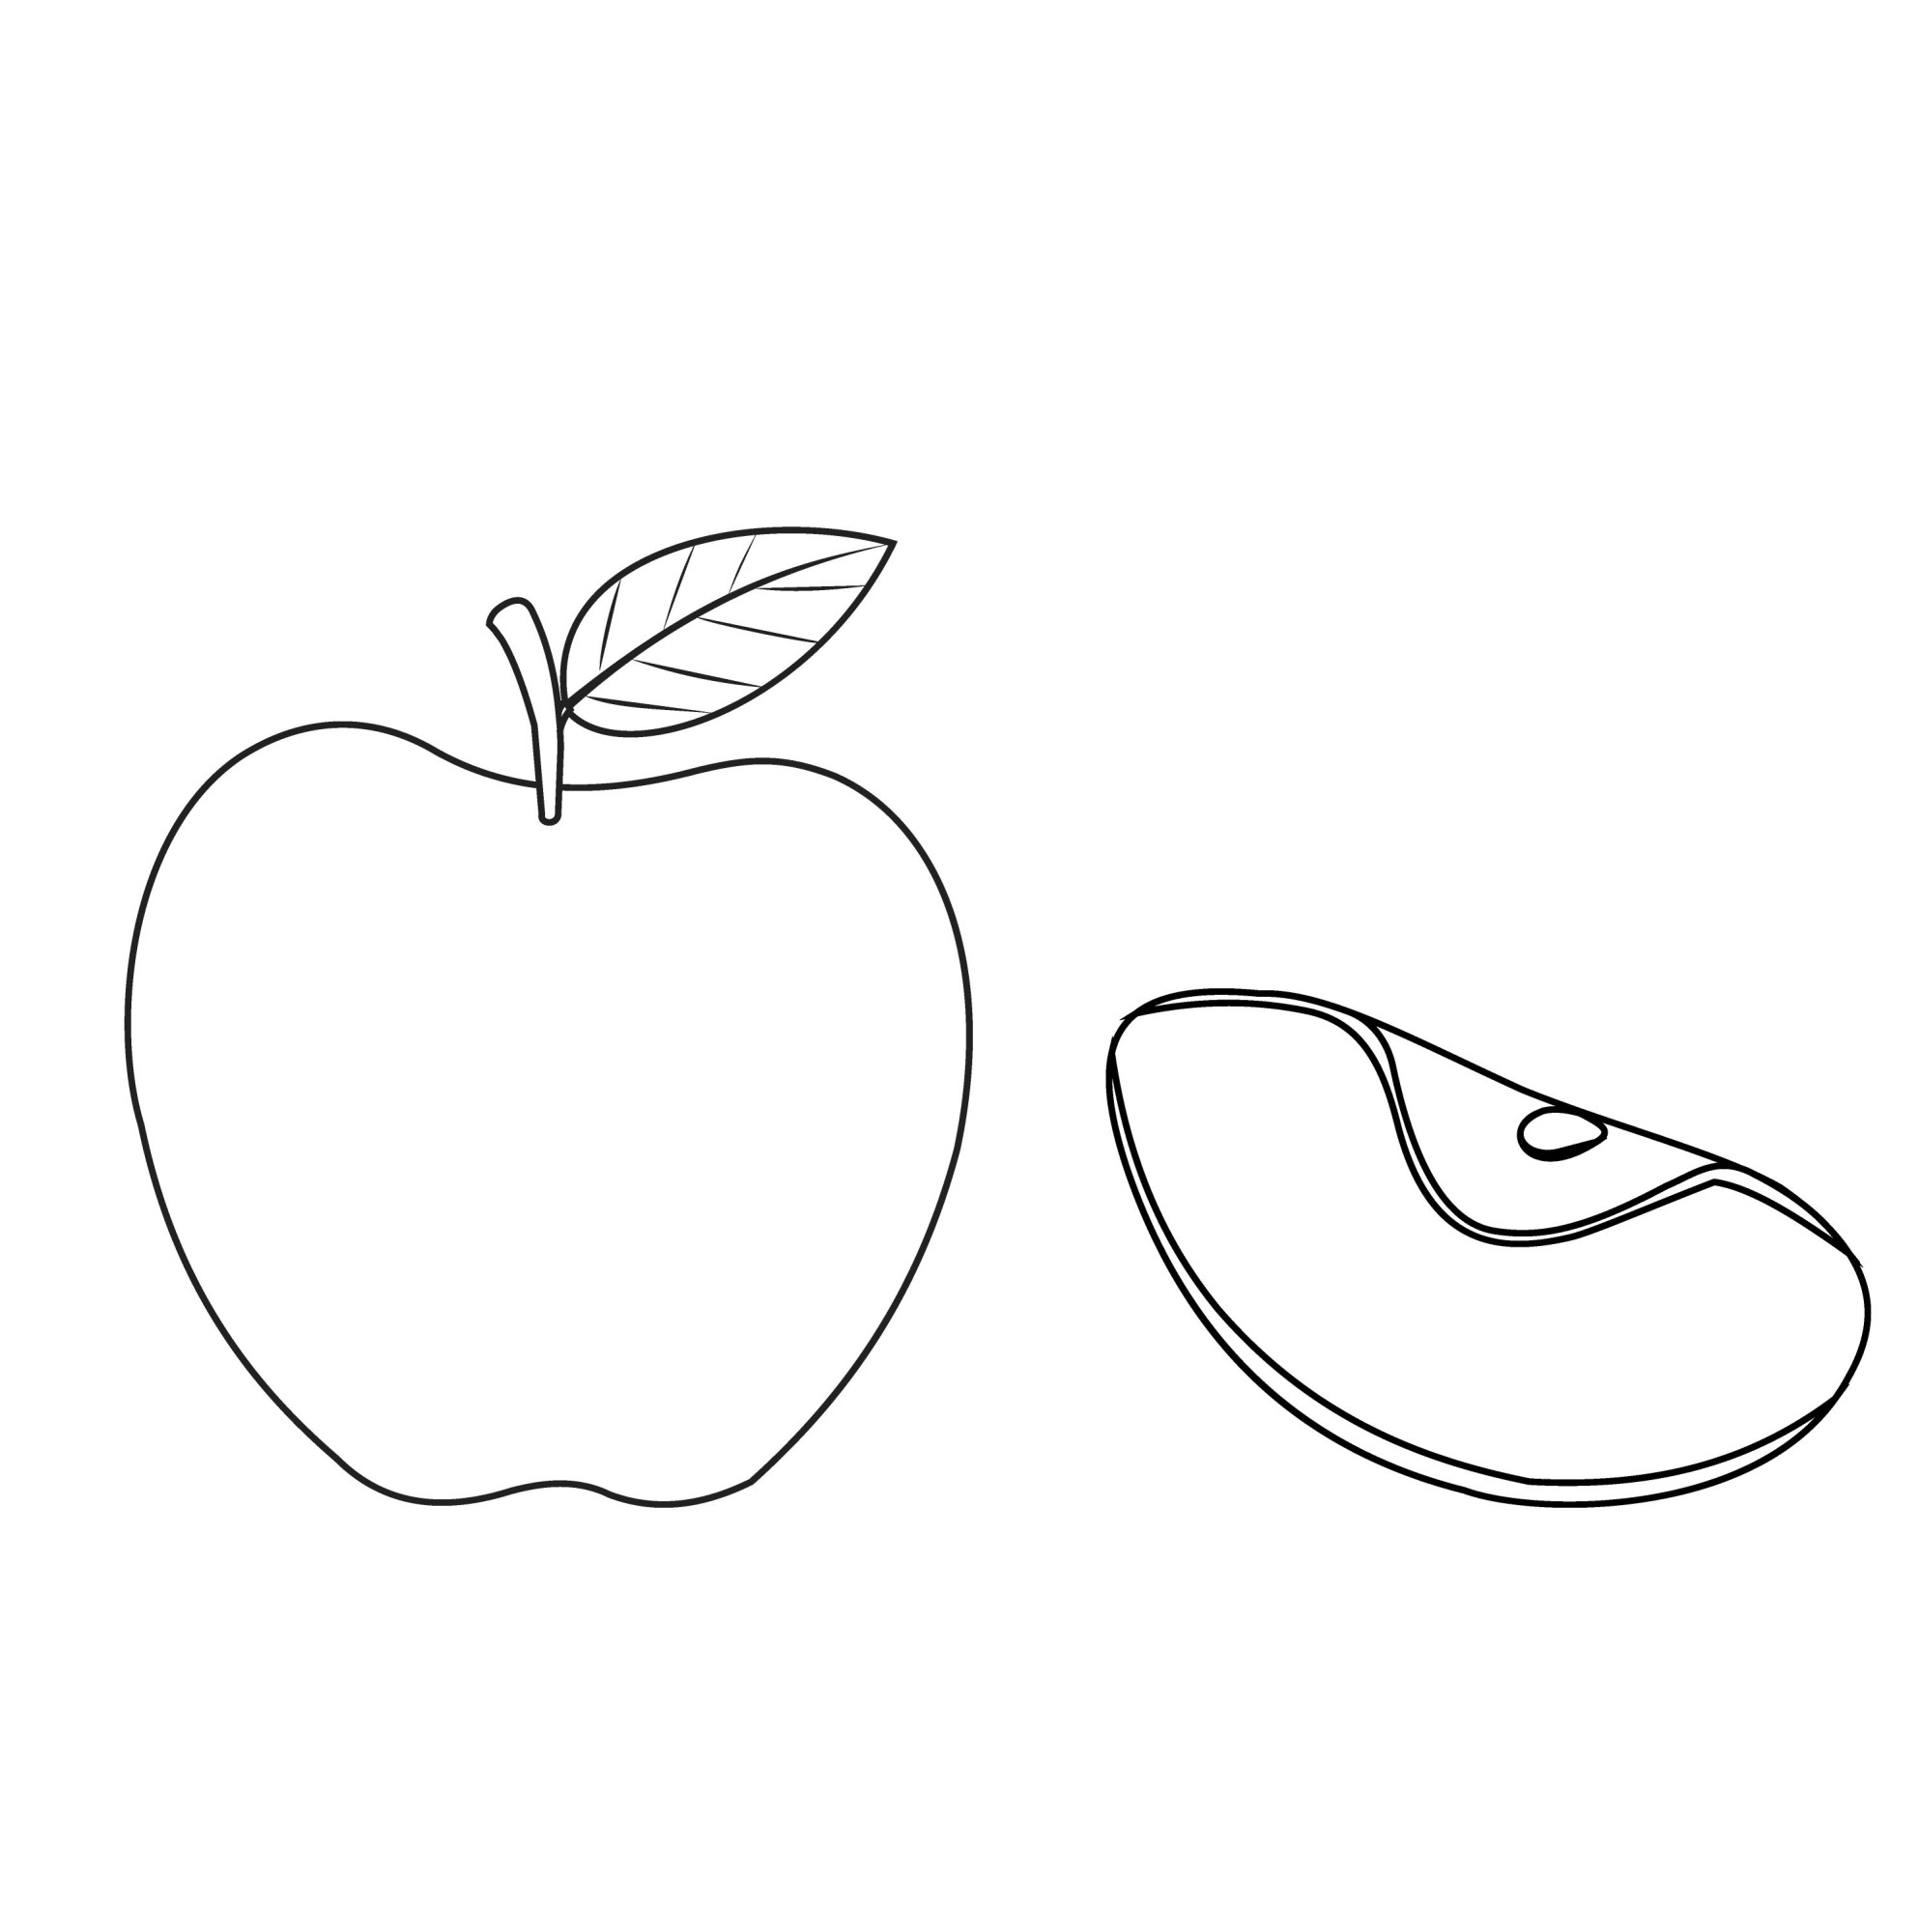 Раскраска для детей: яблоко с долькой